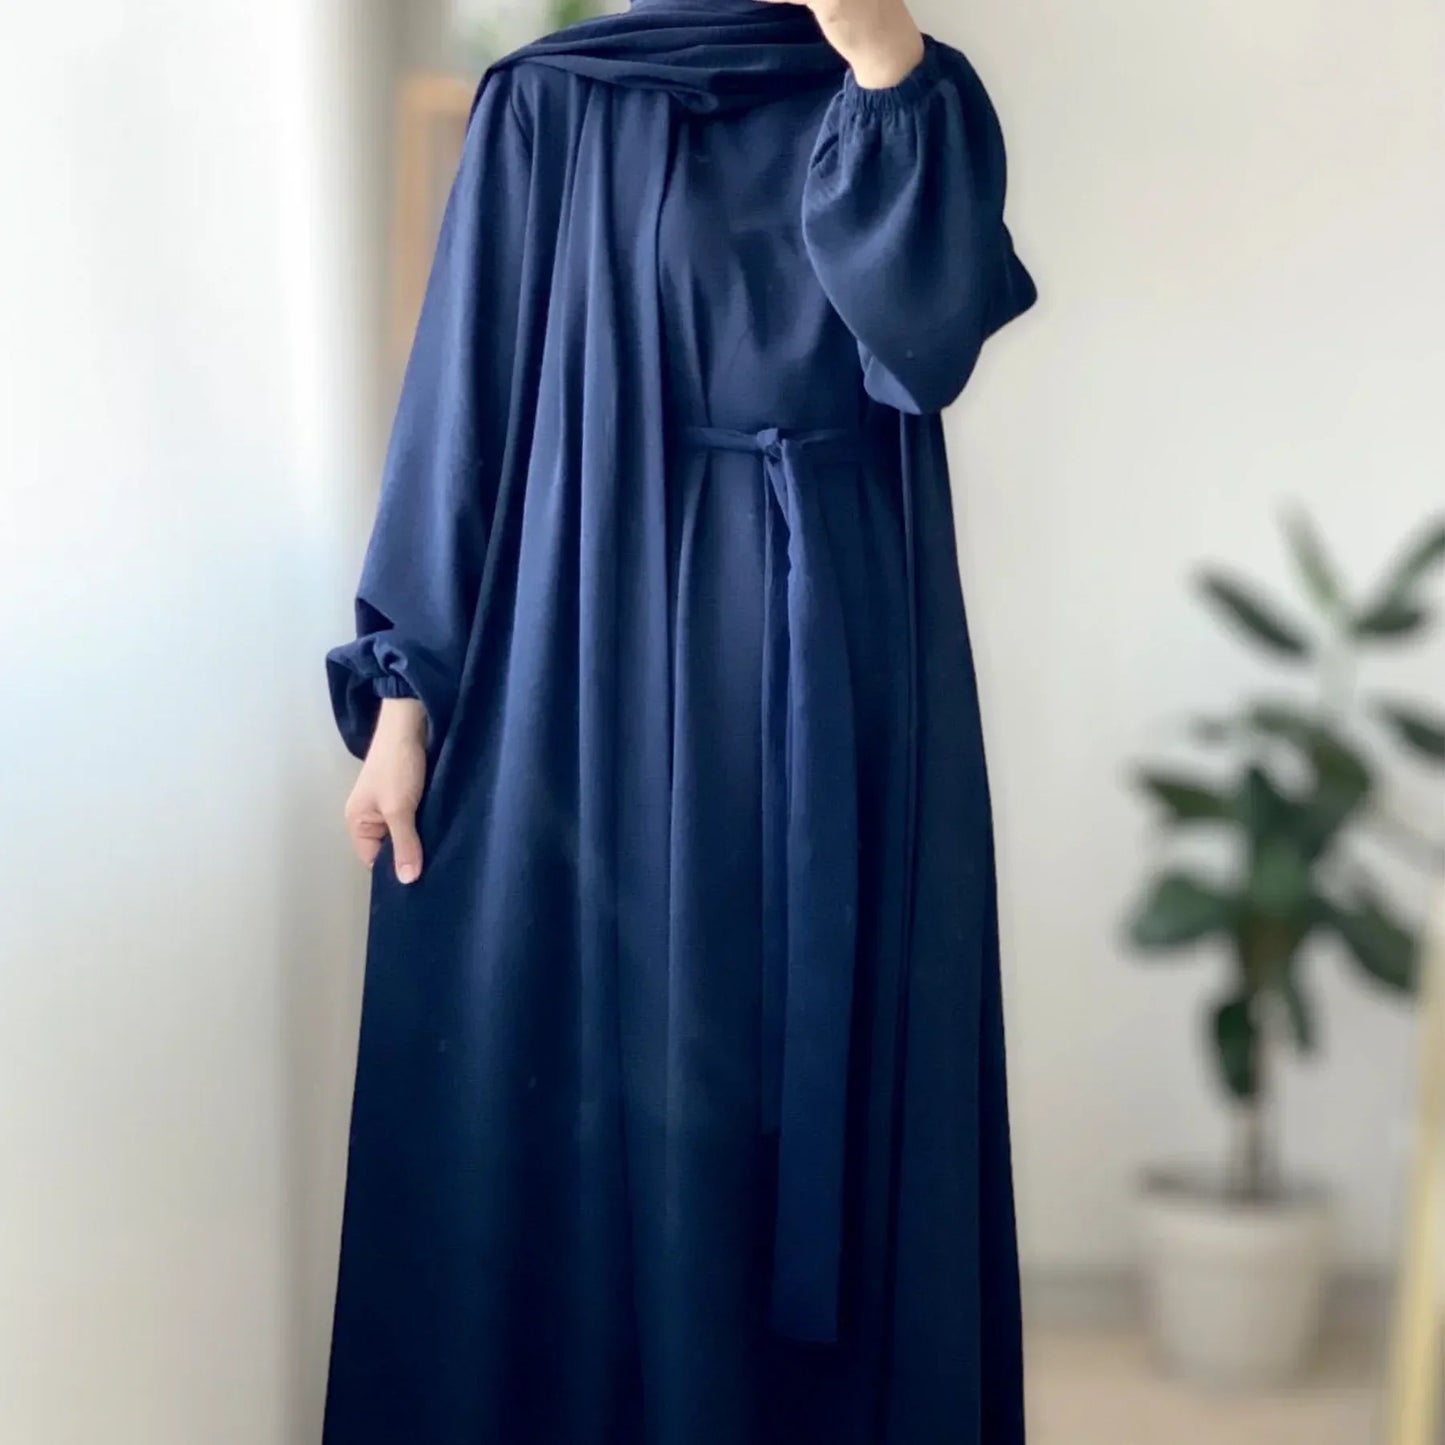 Leila abaya set